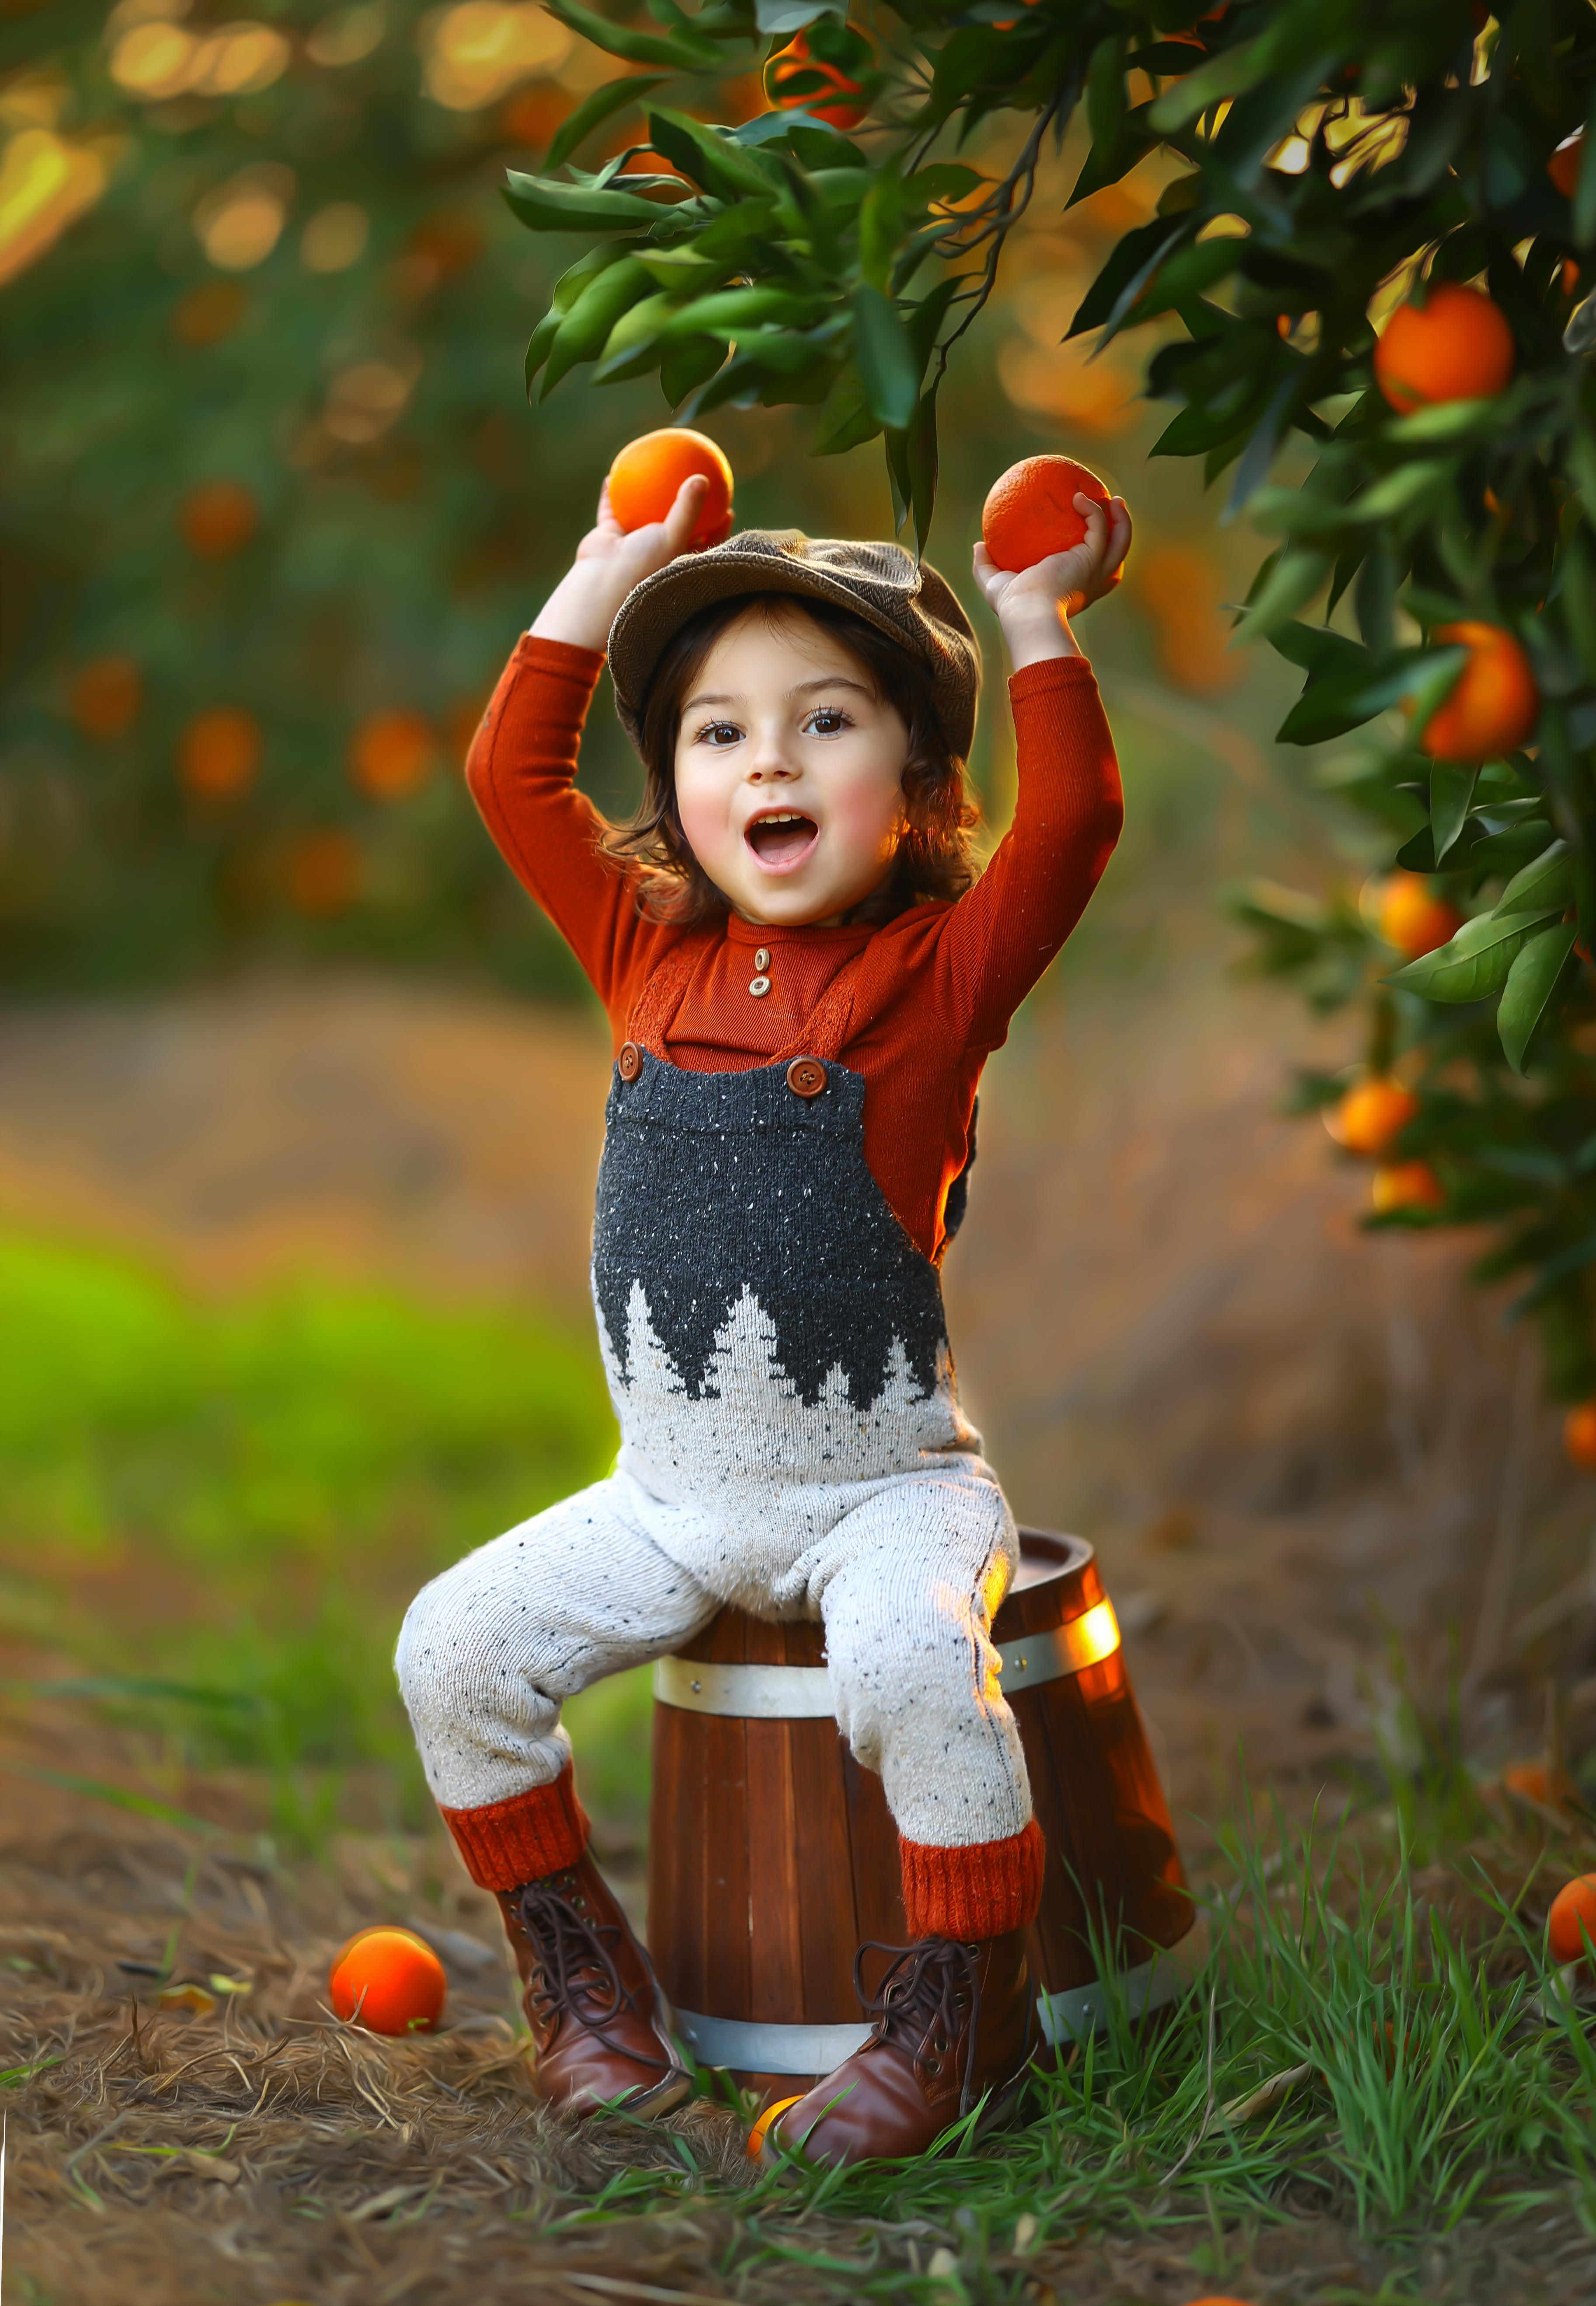 רבקה זץ צילומי ילדים בפרדס תפוזים (2).jpg